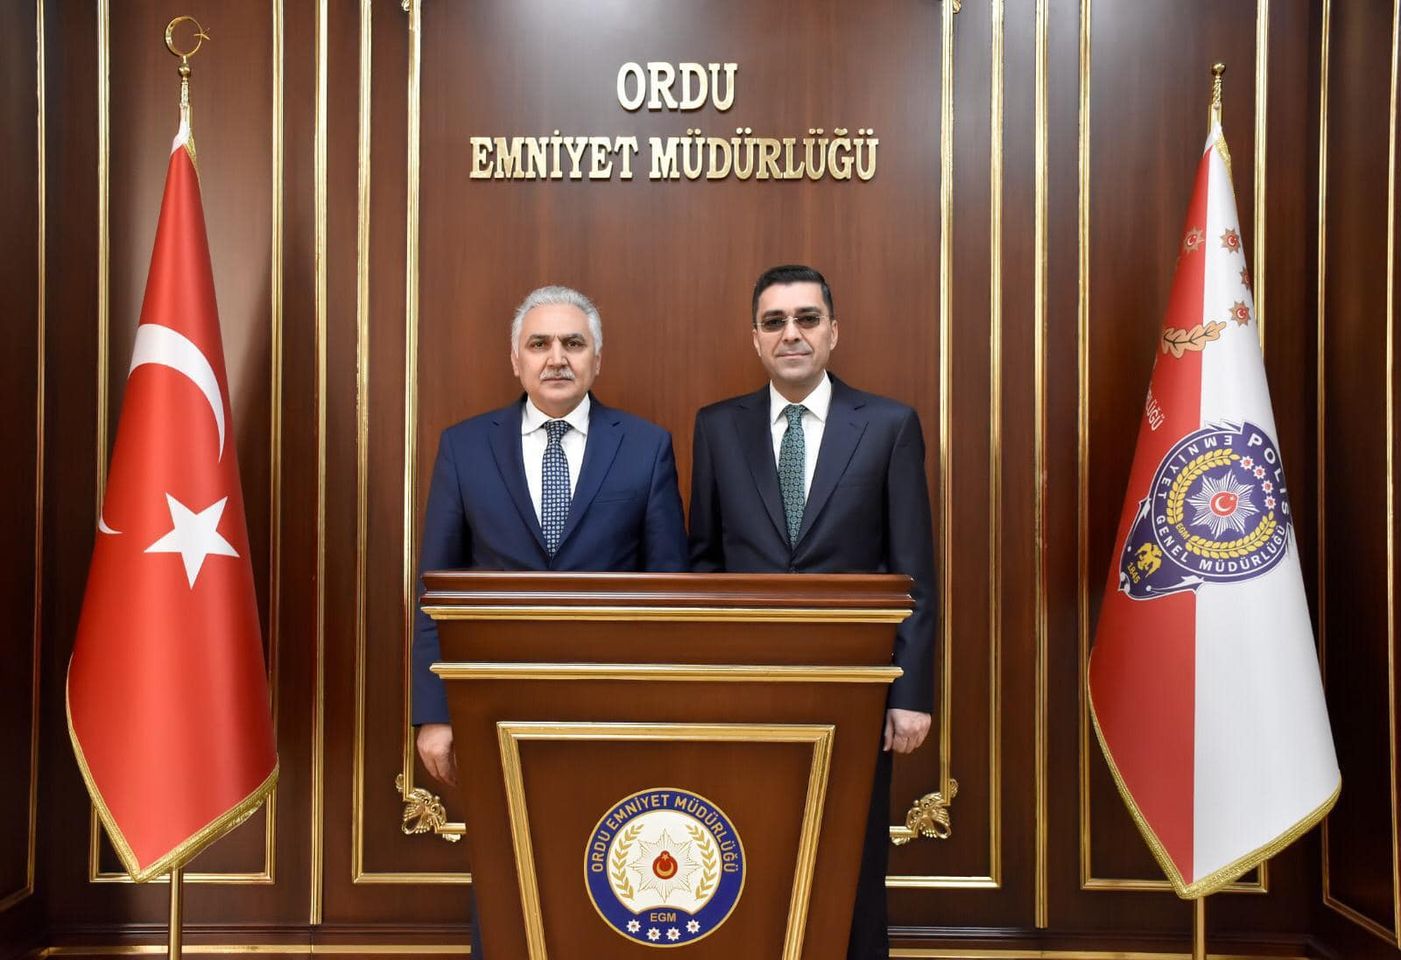 Emniyet Genel Müdür Yardımcısı Ömer Urhal, Ordu İl Emniyet Müdürlüğü'nü ziyaret etti.